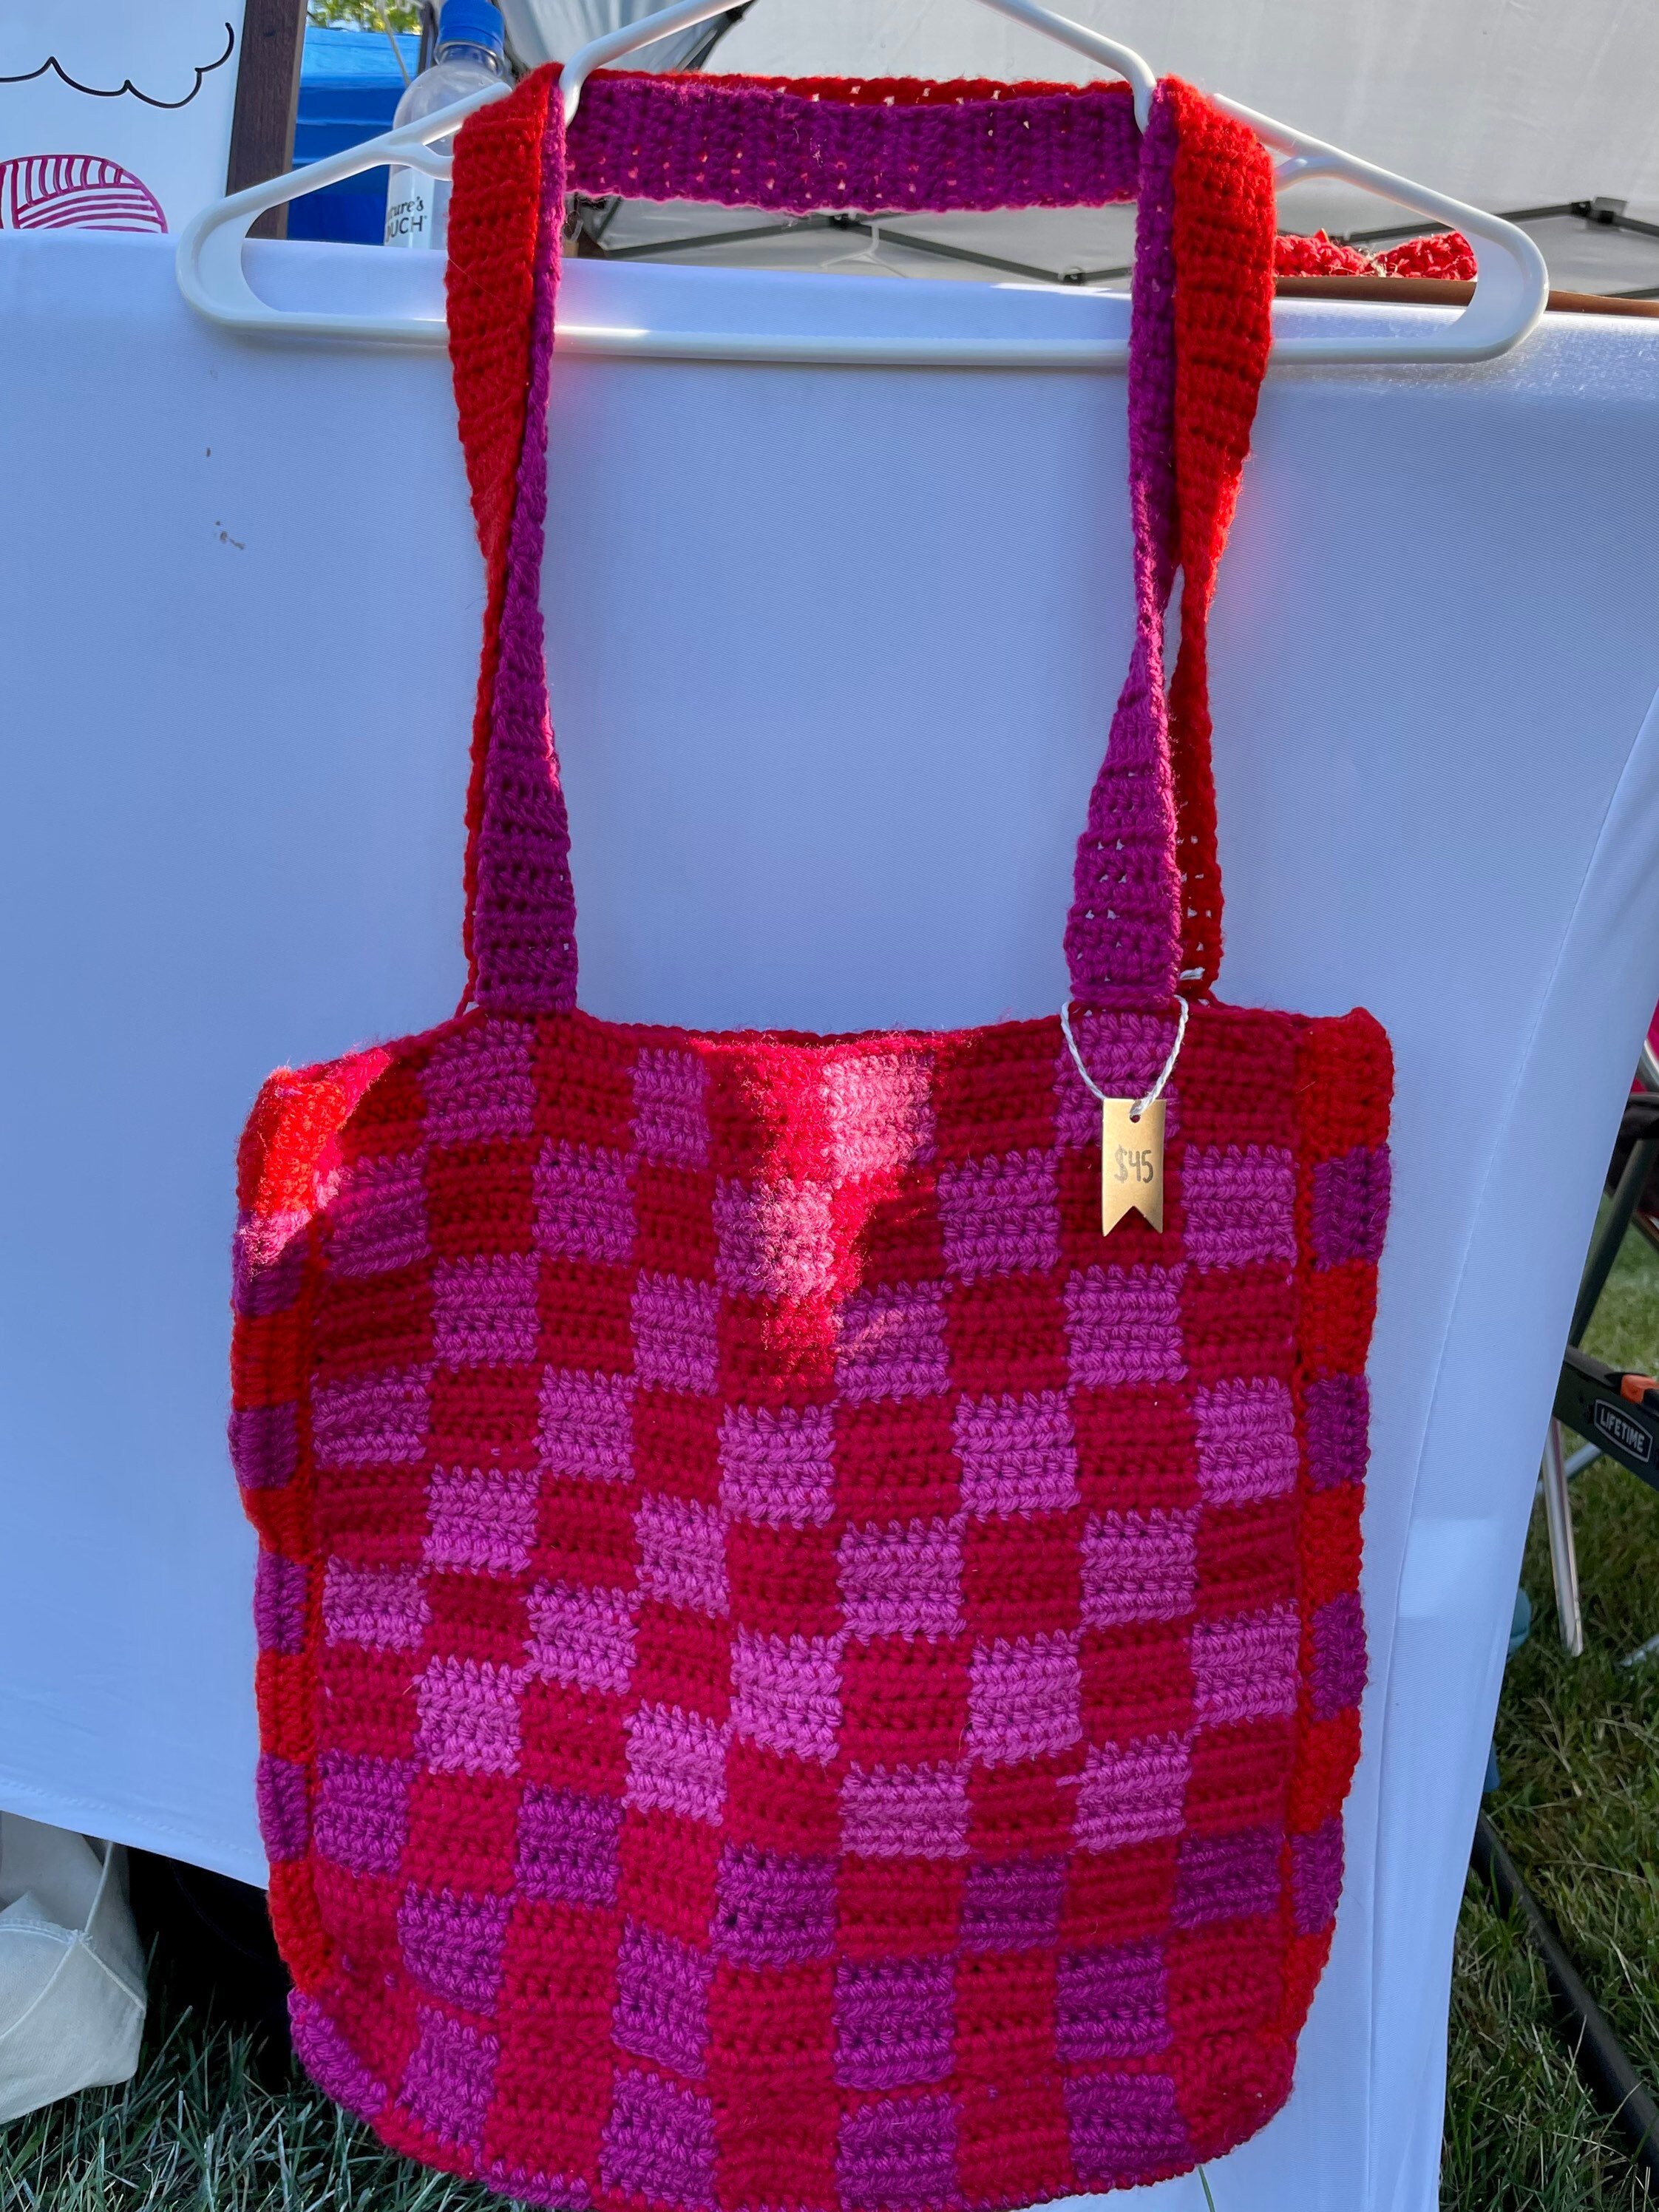 Handmade Trending Checkered Crochet Tote Bag. New